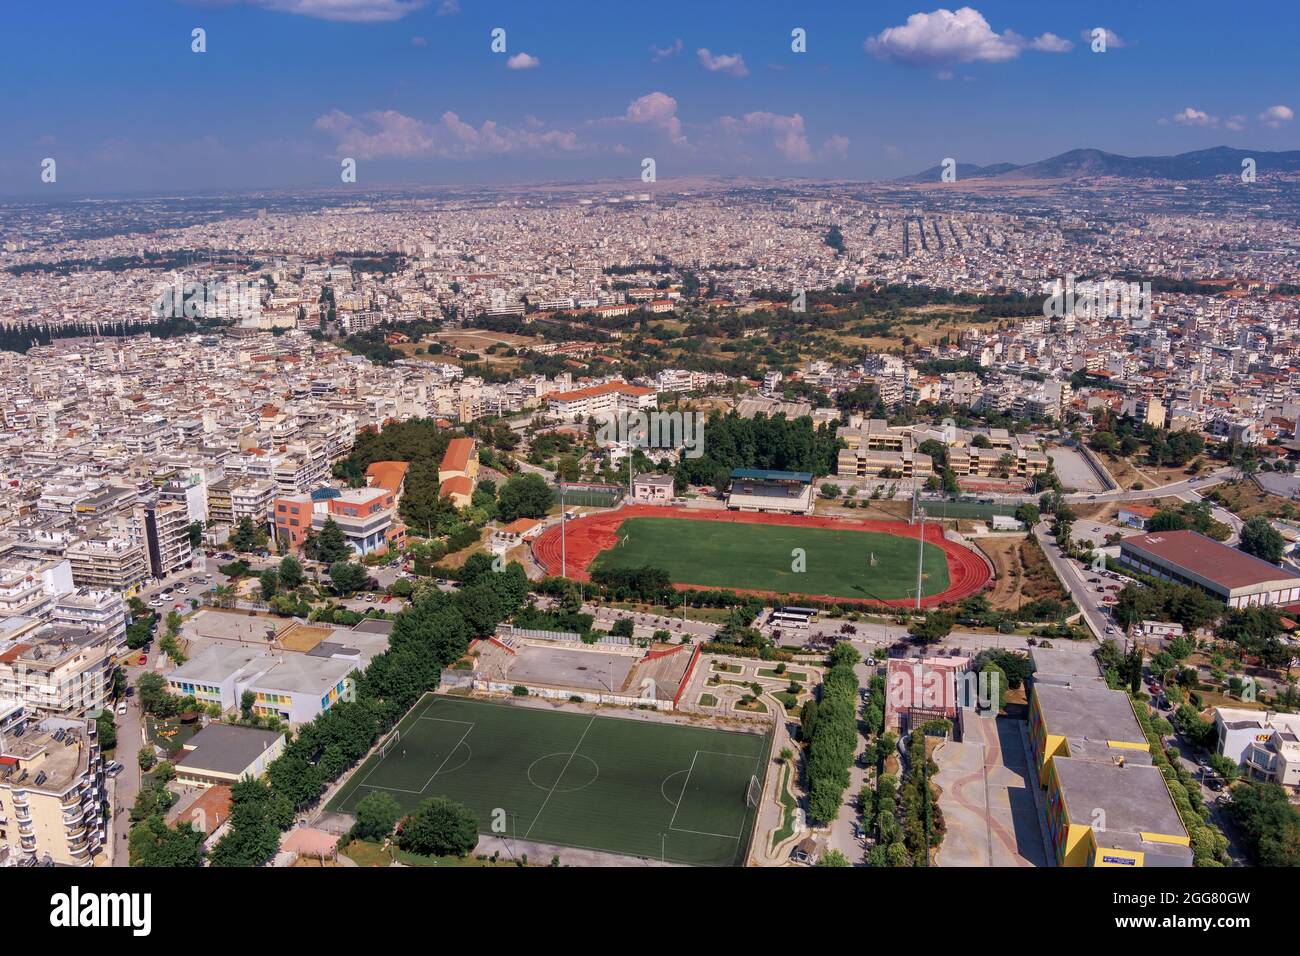 Vista aerea della città di Salonicco dalla zona Neapoli. Salonicco è la seconda città più grande della Grecia e la capitale della Macedonia greca. N Foto Stock